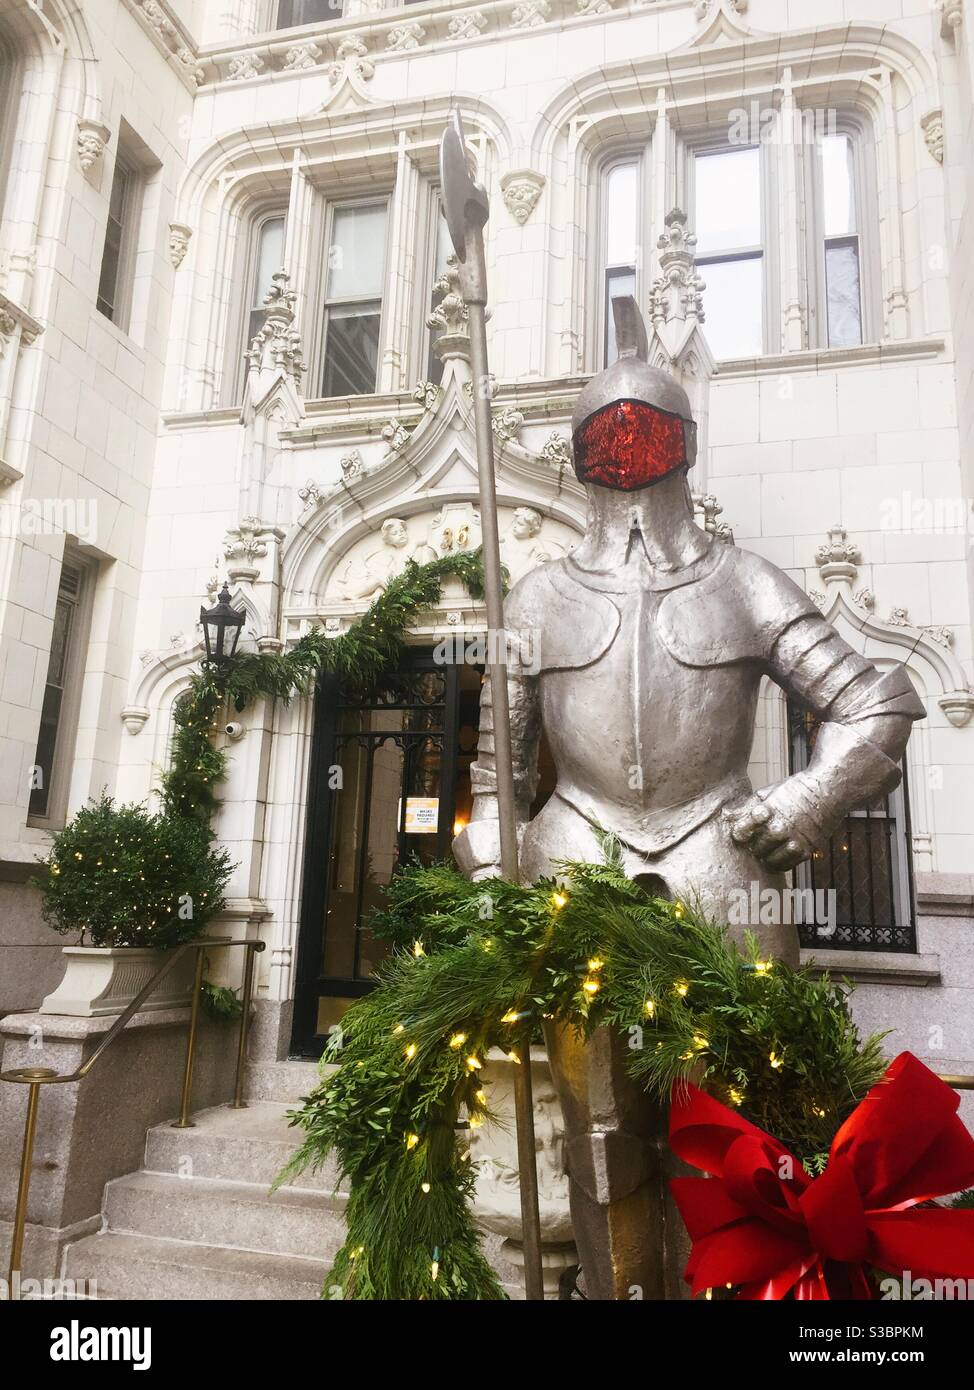 Une statue d'un chevalier blindé se dresse devant un immeuble de luxe haut de gamme à Gramercy Park pendant la période des fêtes, NYC, Etats-Unis Banque D'Images